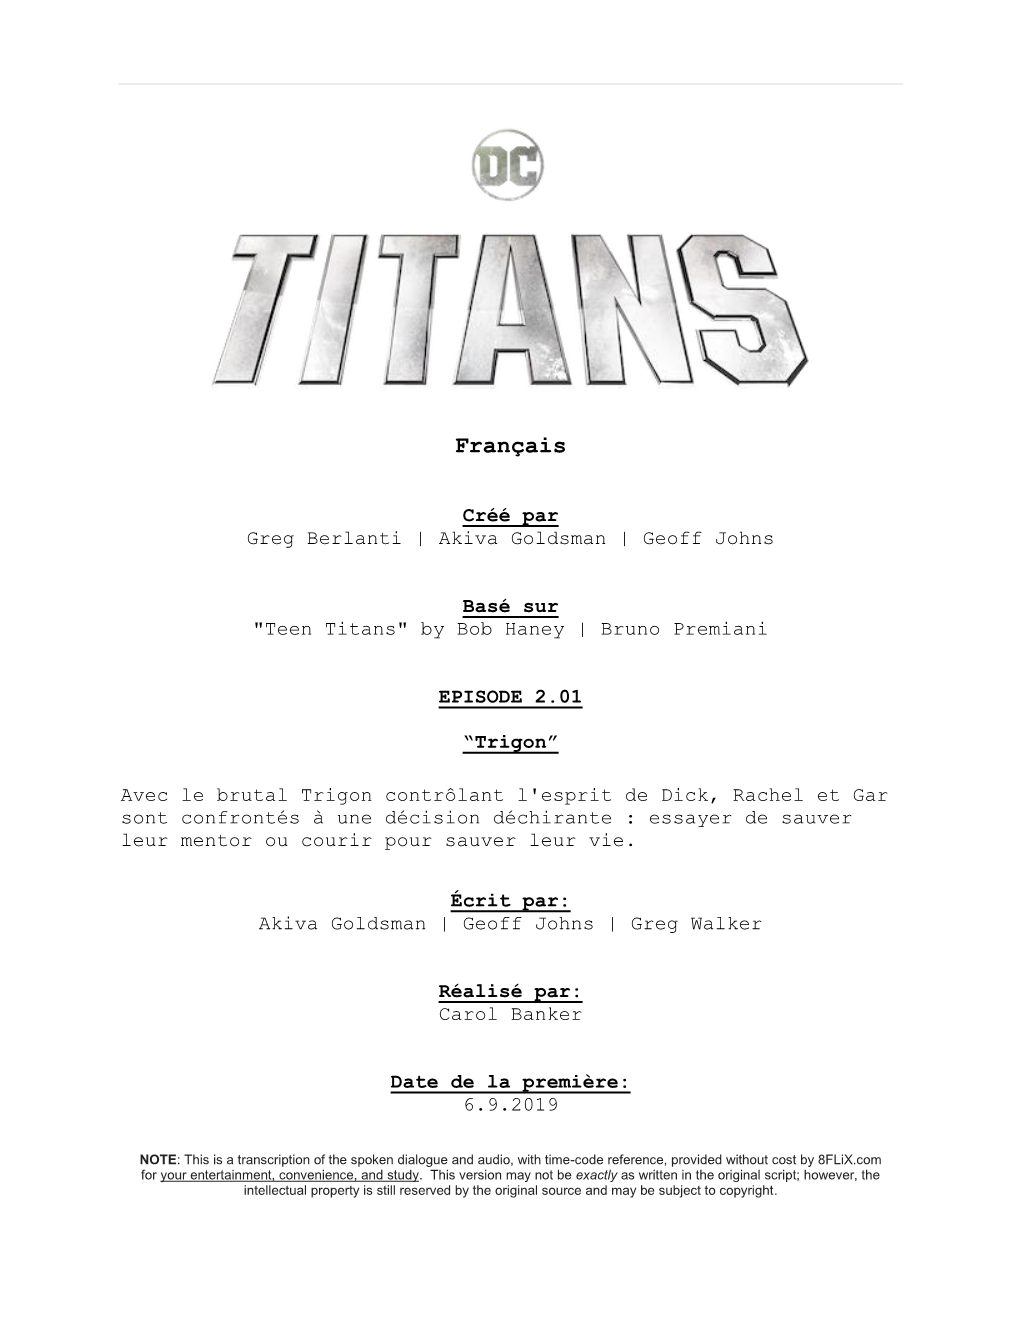 Titans | French Dialogue | S2:E1